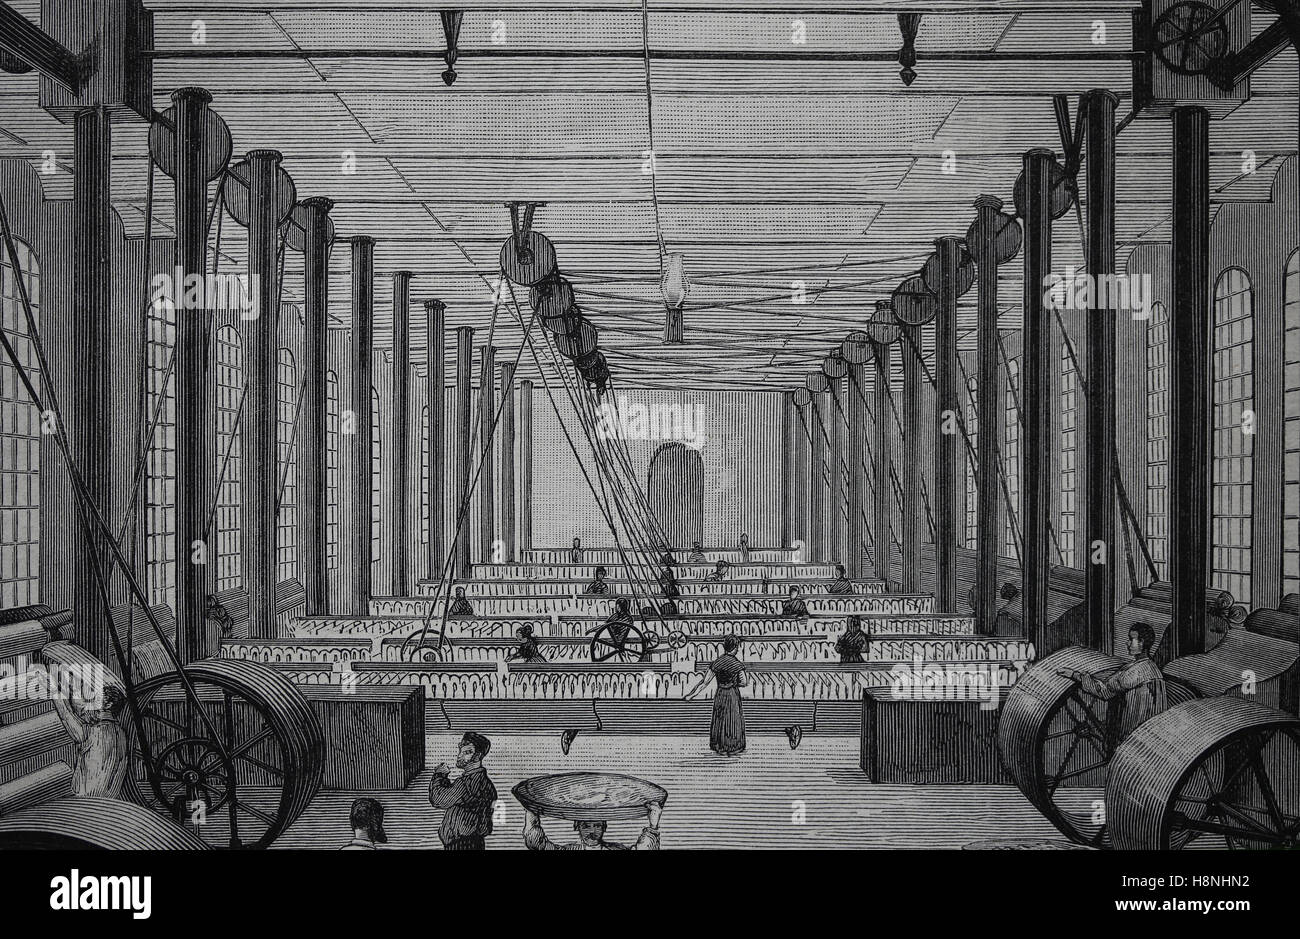 Abschnitt-Garne. Innenraum. Sert und Sola Brüder Fabrik. Barcelona, Spanien. Zeichnung von Antonio Regalt, 1882 Stockfoto